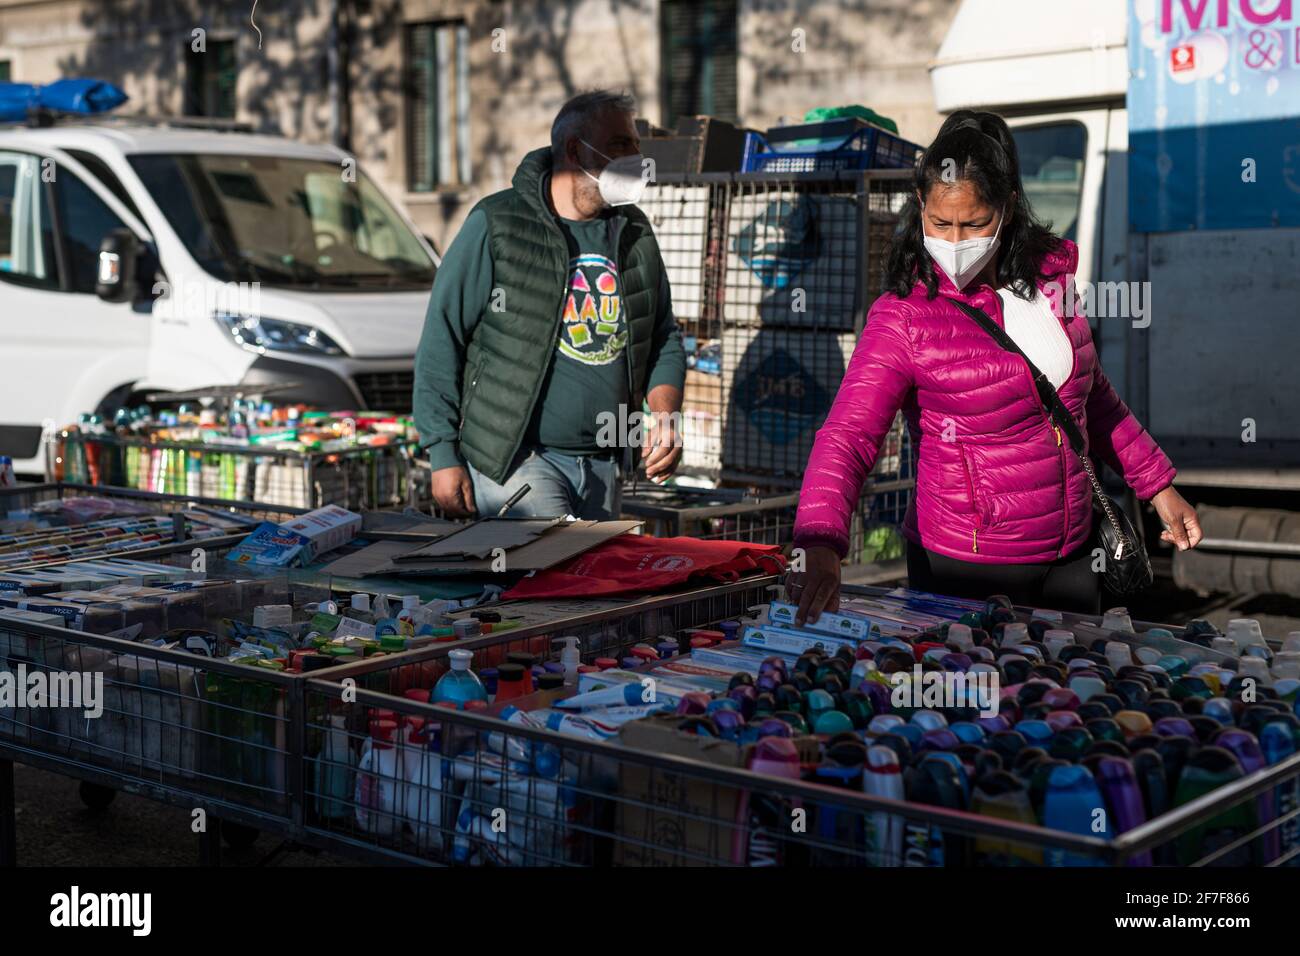 Turin, Italien - 07. April 2021: Zwei Straßenhändler haben während eines Protestes von Straßenverkäufern von Non-Food-Sektoren gegen die Schließungen aufgrund von Regierungsbeschränkungen gegen den COVID-19 einen Stand eingerichtet. Trotz des Verbots haben die Händler ihre Stände aufgestellt. Kredit: Nicolò Campo/Alamy Live Nachrichten Stockfoto